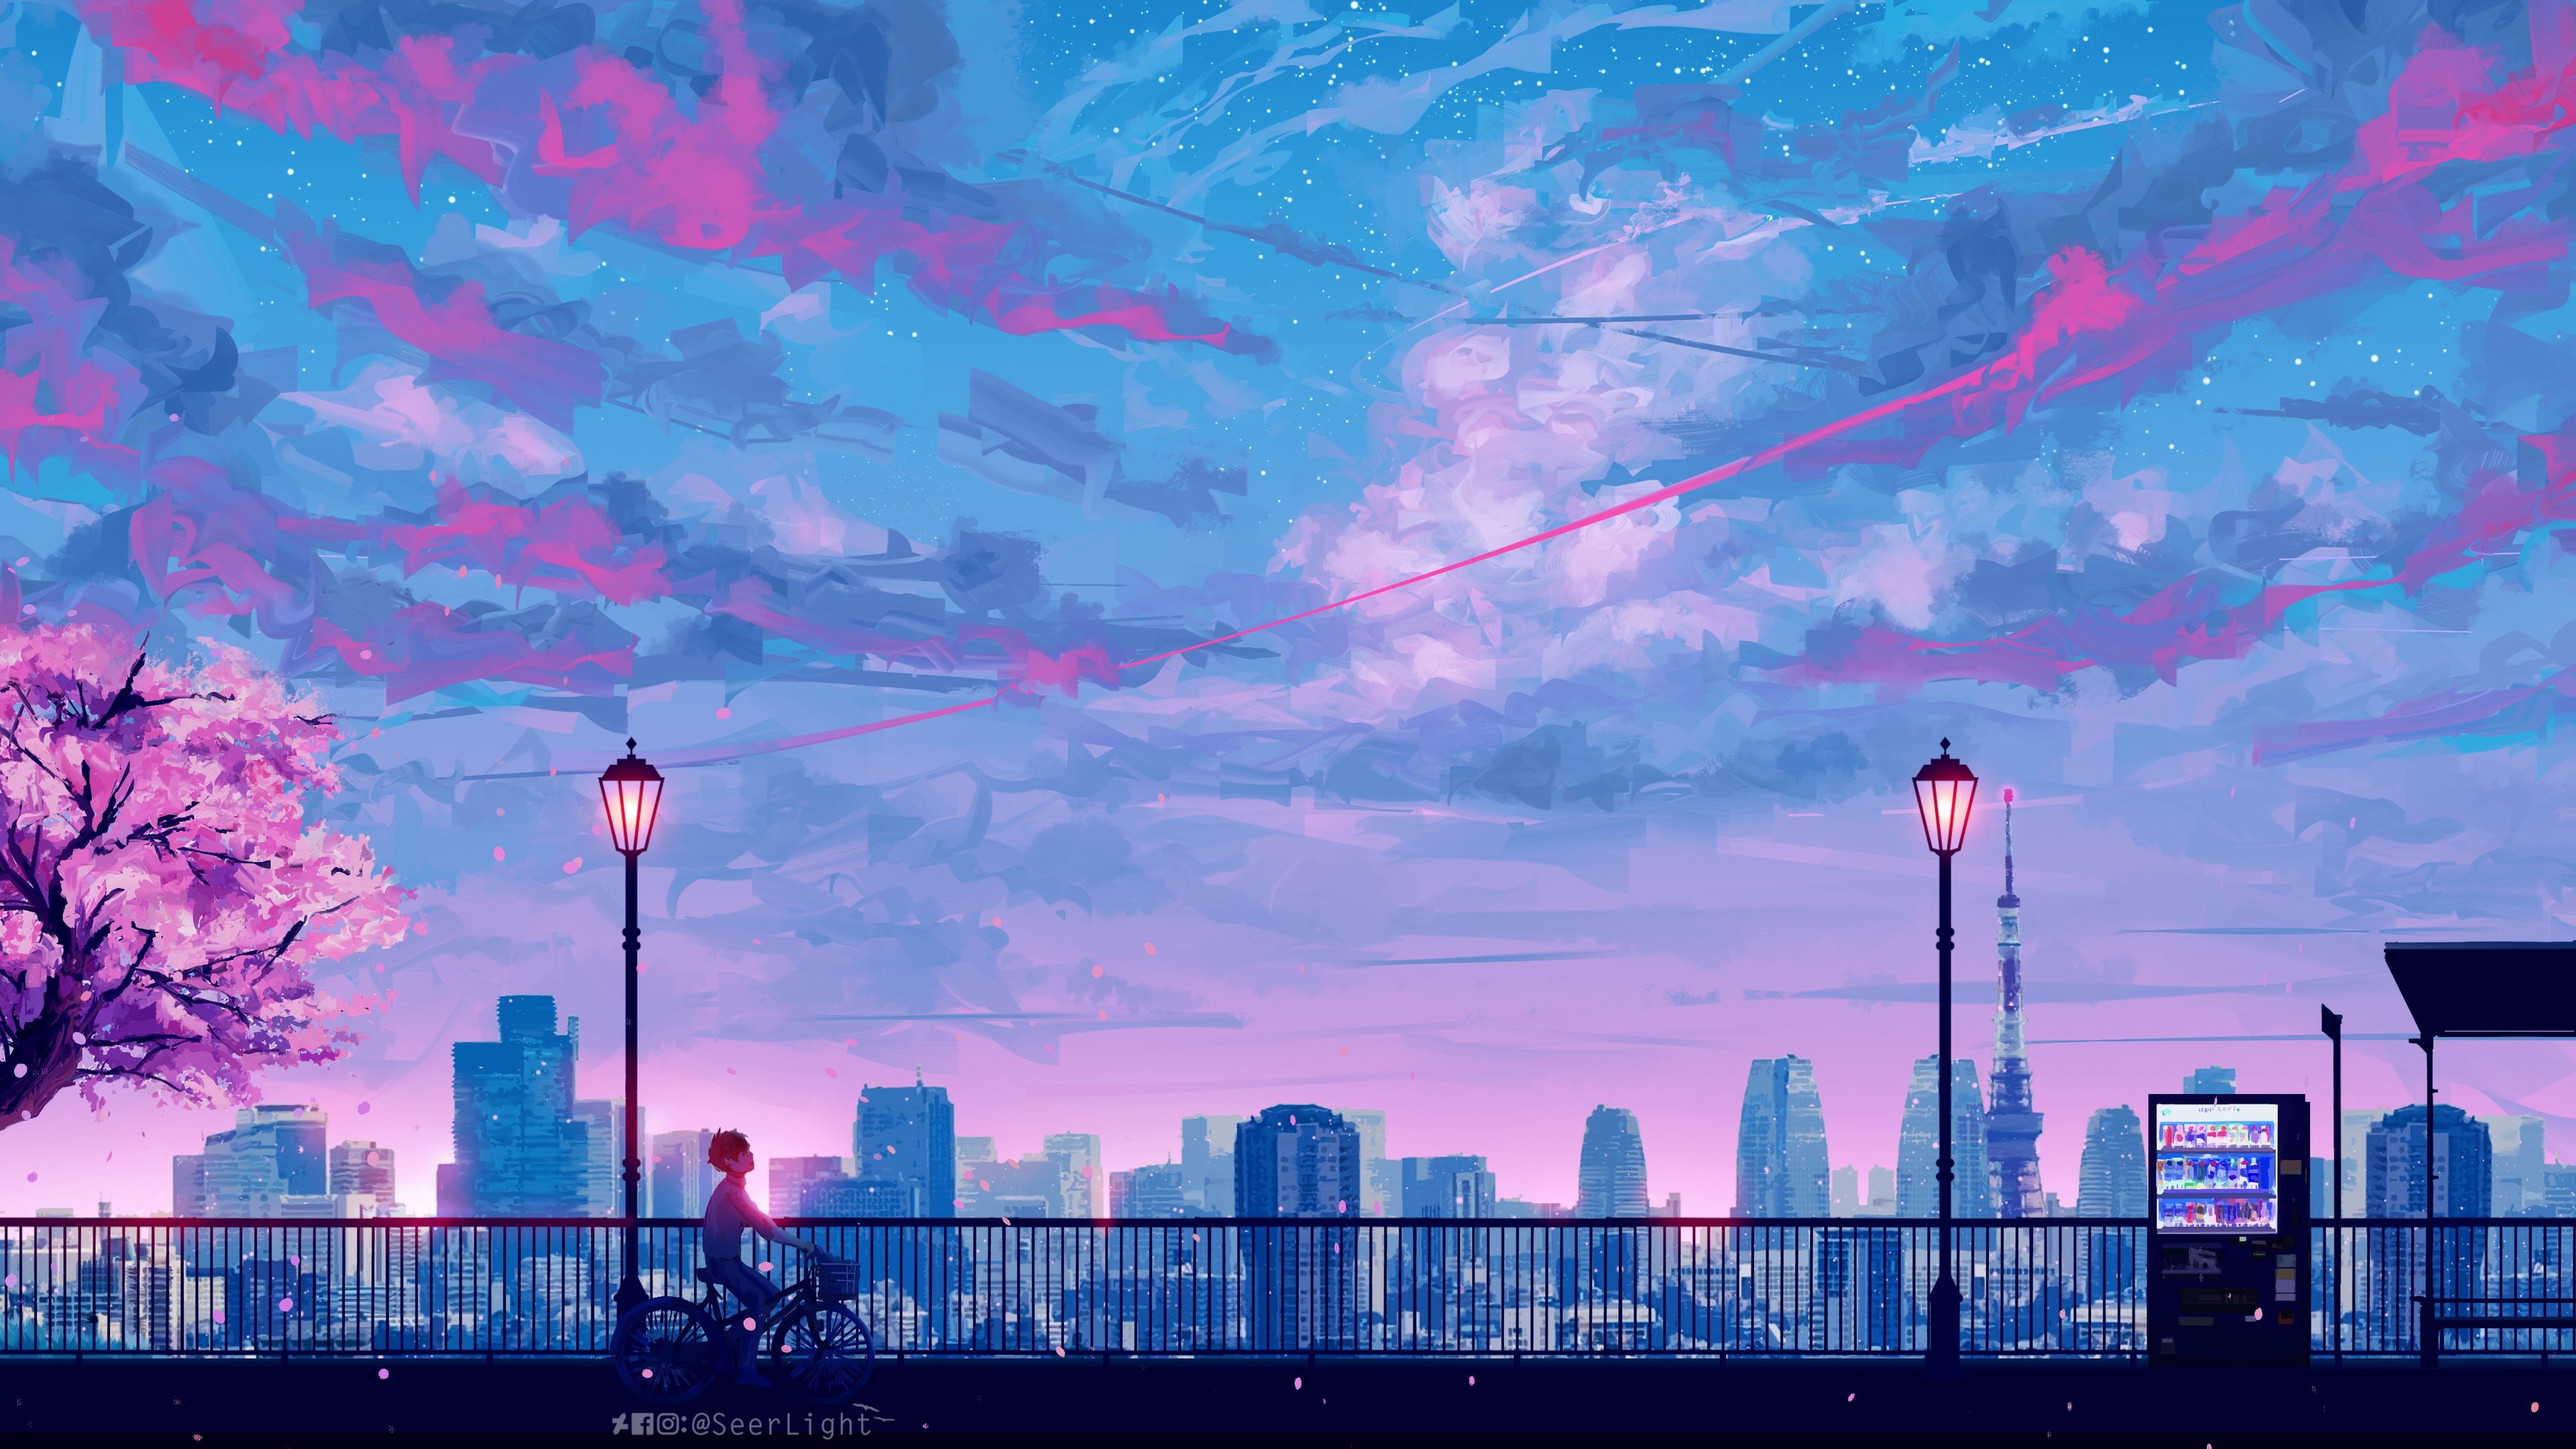 Anime Cityscape Landscape Scenery 4k .com